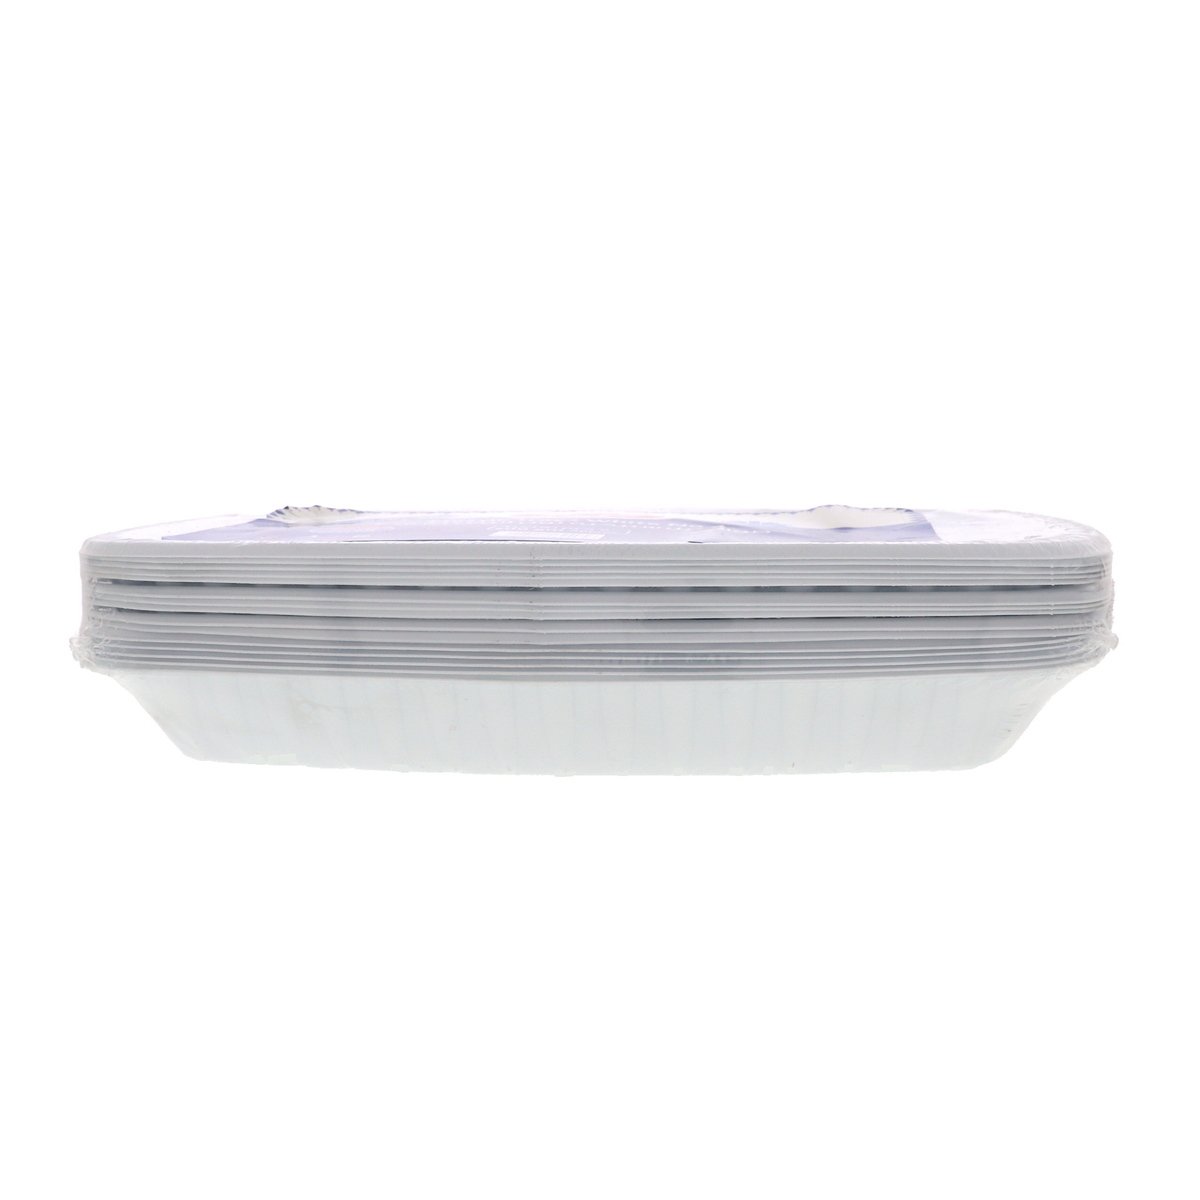 لولو صواني بلاستيكية بيضاء رقم 4 وزن 500 جم تقريبًا